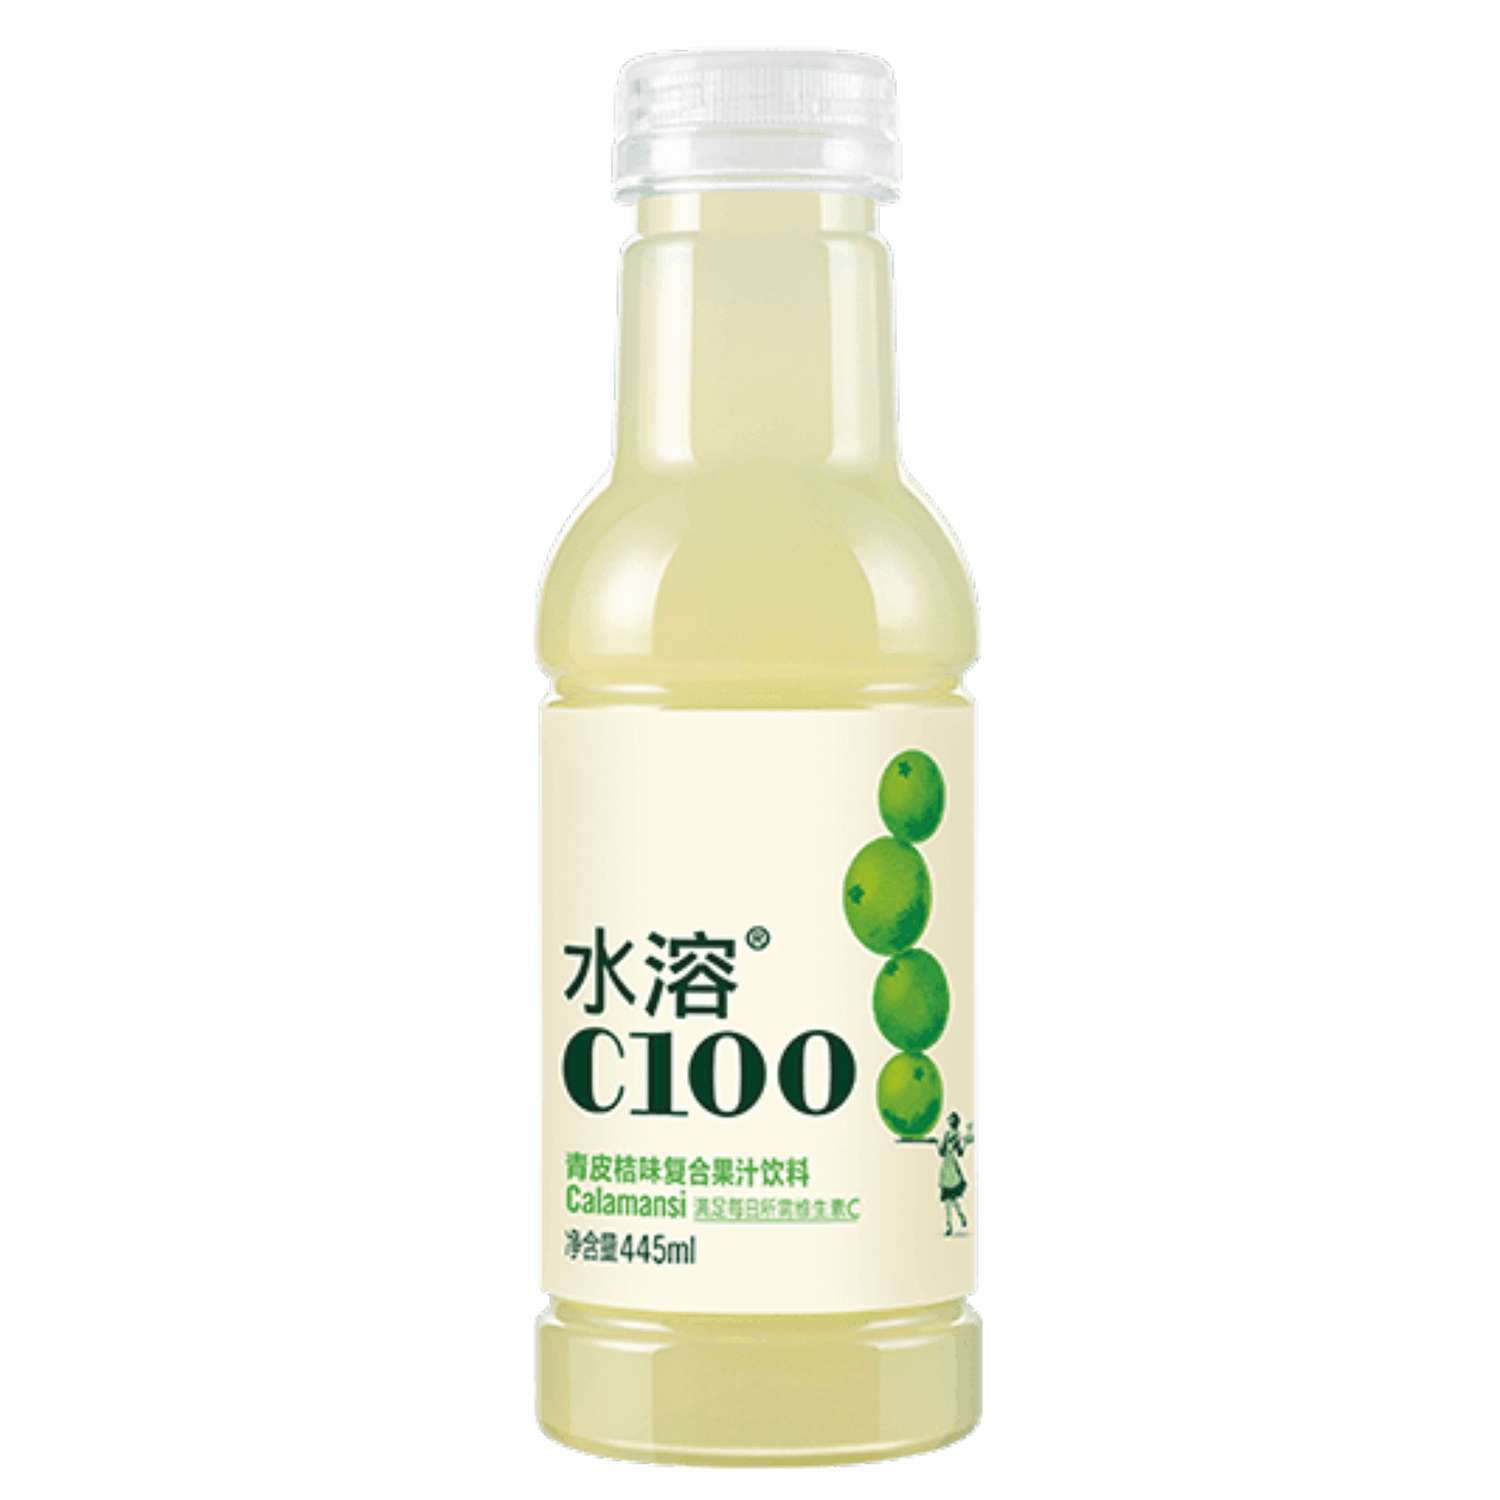 Витаминизированный напиток С 100 Зеленый мандарин 445 мл. - фото 1